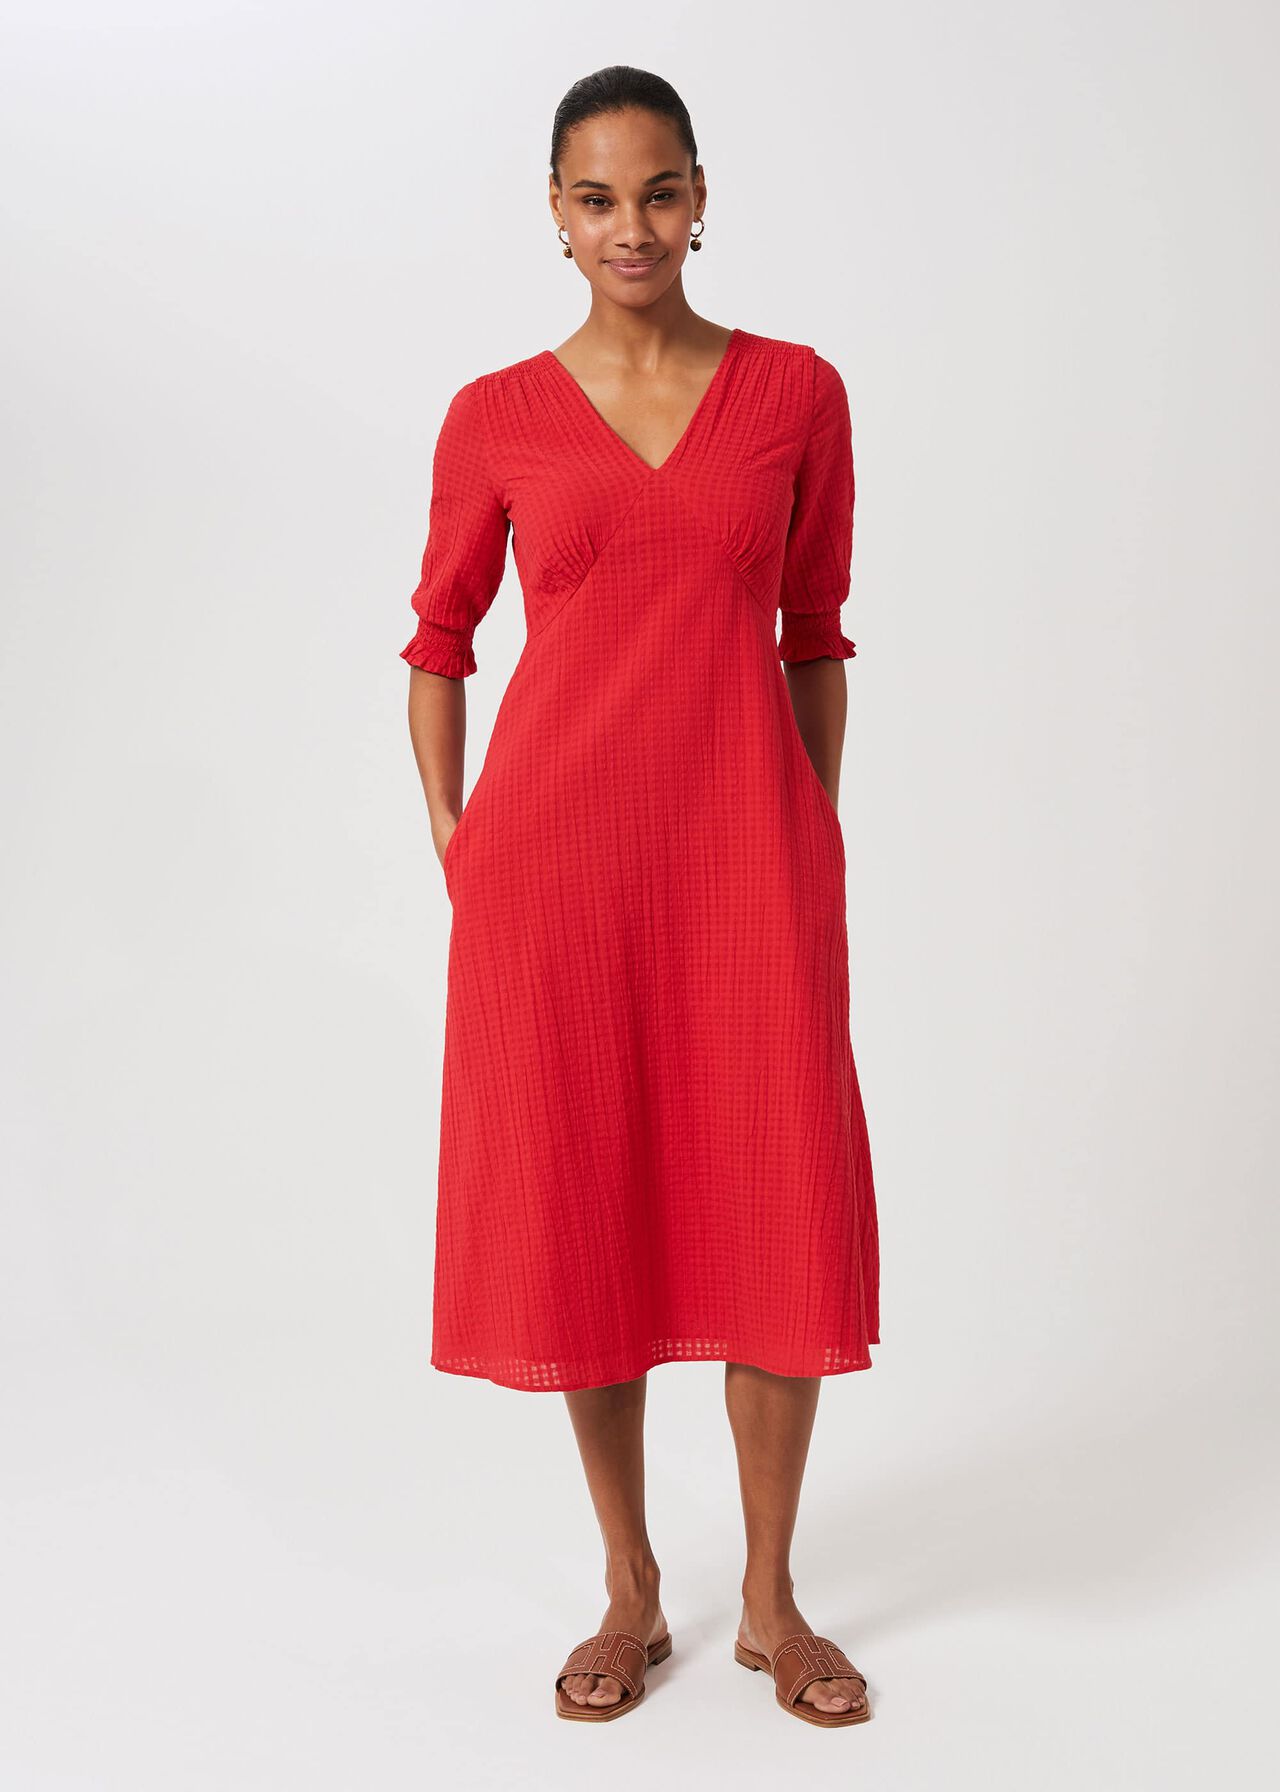 Tonicha Dress, Coral Red, hi-res